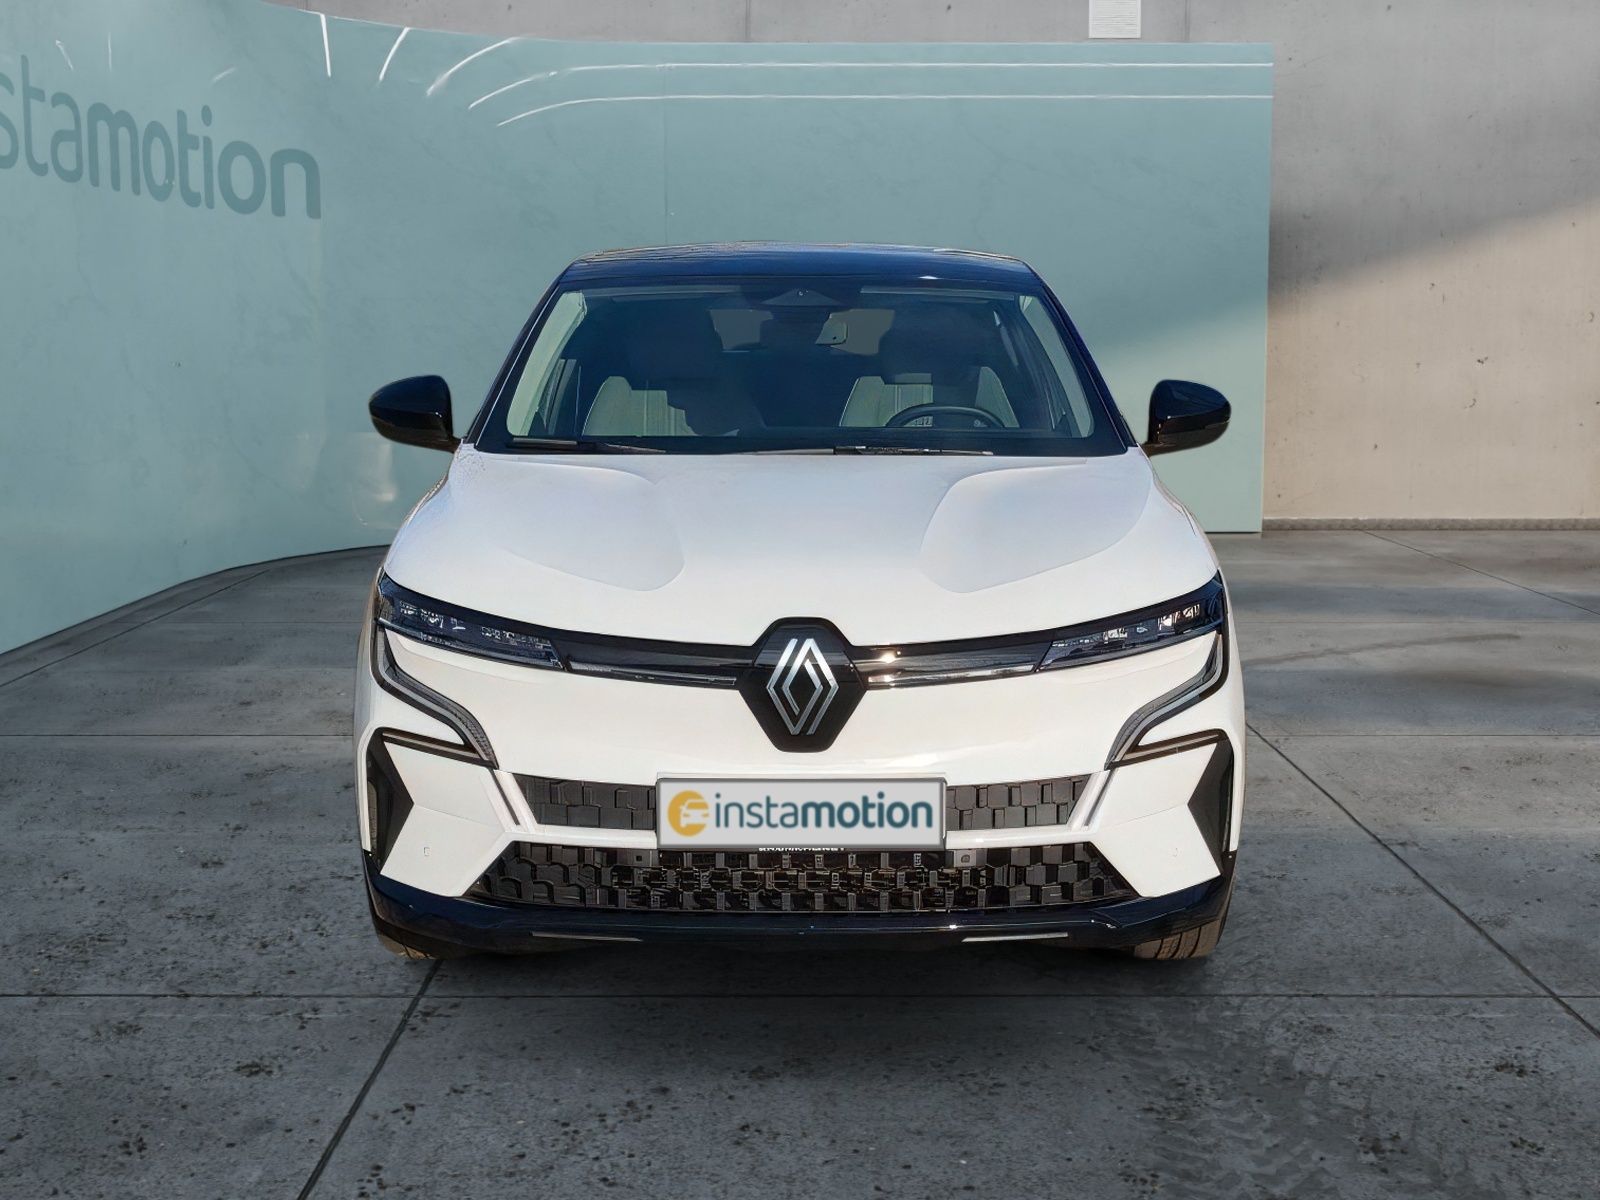 Renault Megane E-Tech Gebrauchtwagen online kaufen bei instamotion